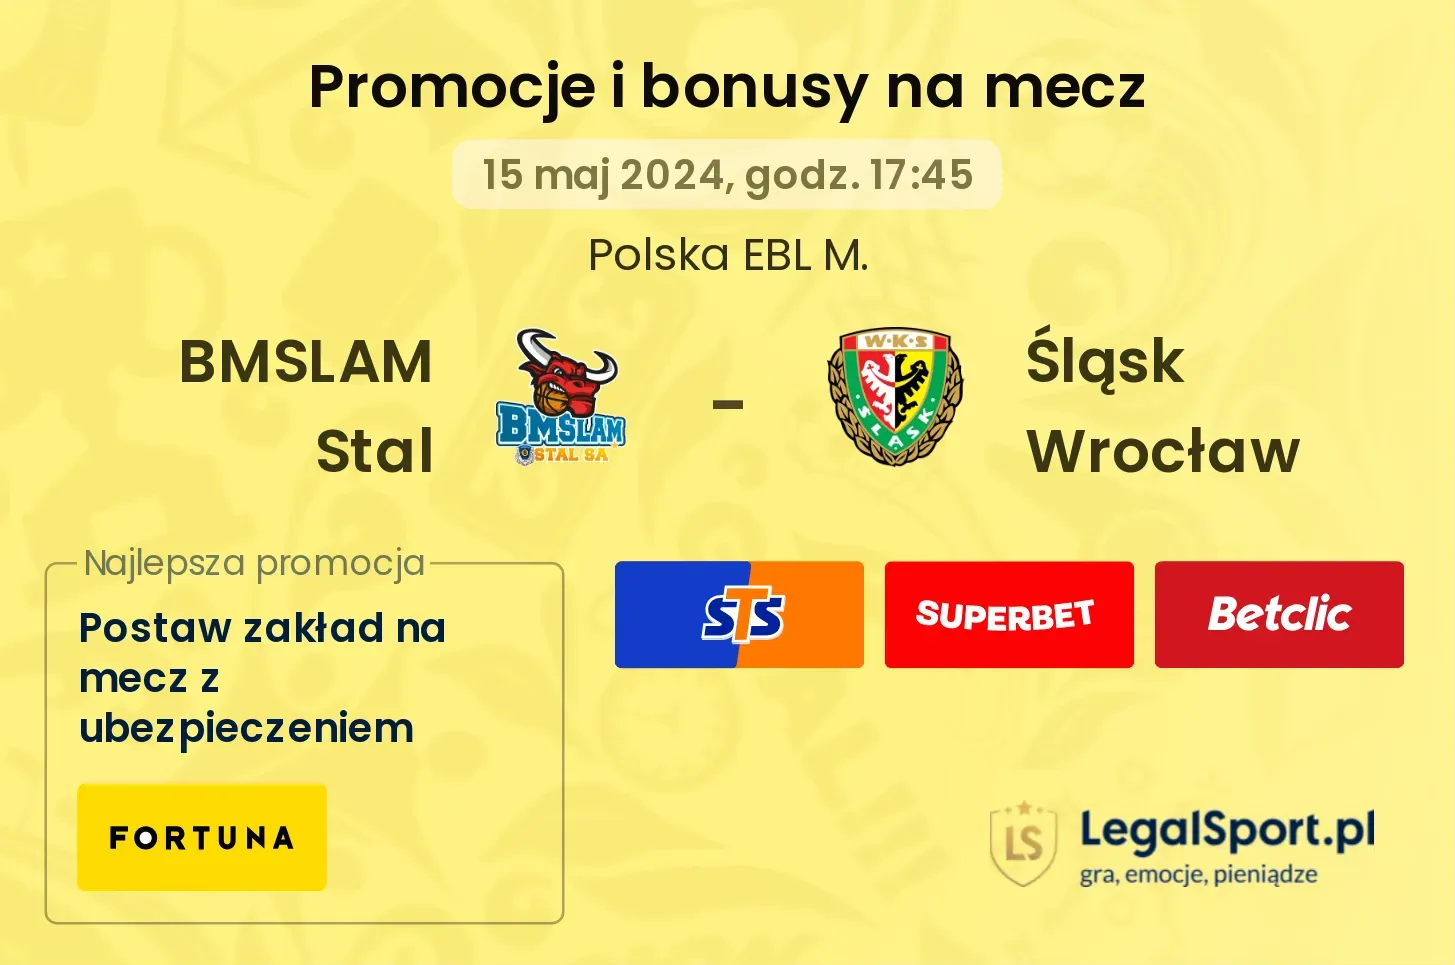 BMSLAM Stal - Śląsk Wrocław promocje bonusy na mecz